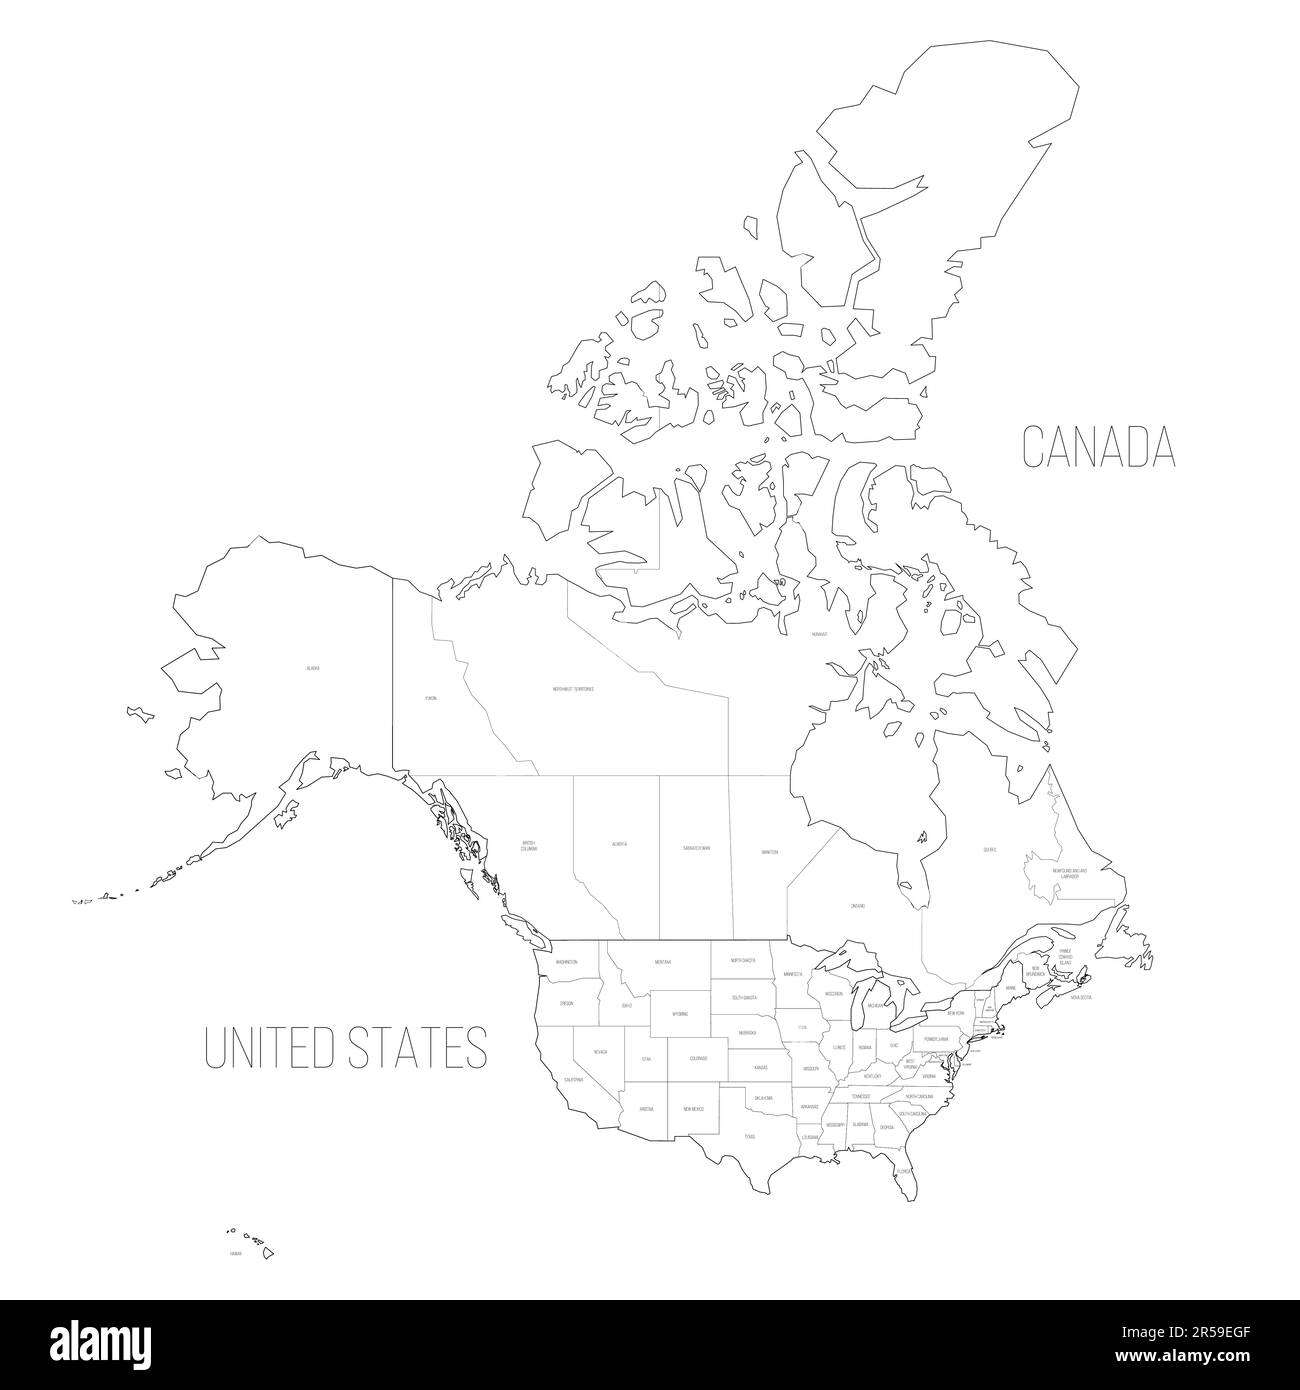 Mappa politica degli Stati Uniti e del Canada delle divisioni amministrative. Mappa vettoriale con contorno nero vuota Illustrazione Vettoriale